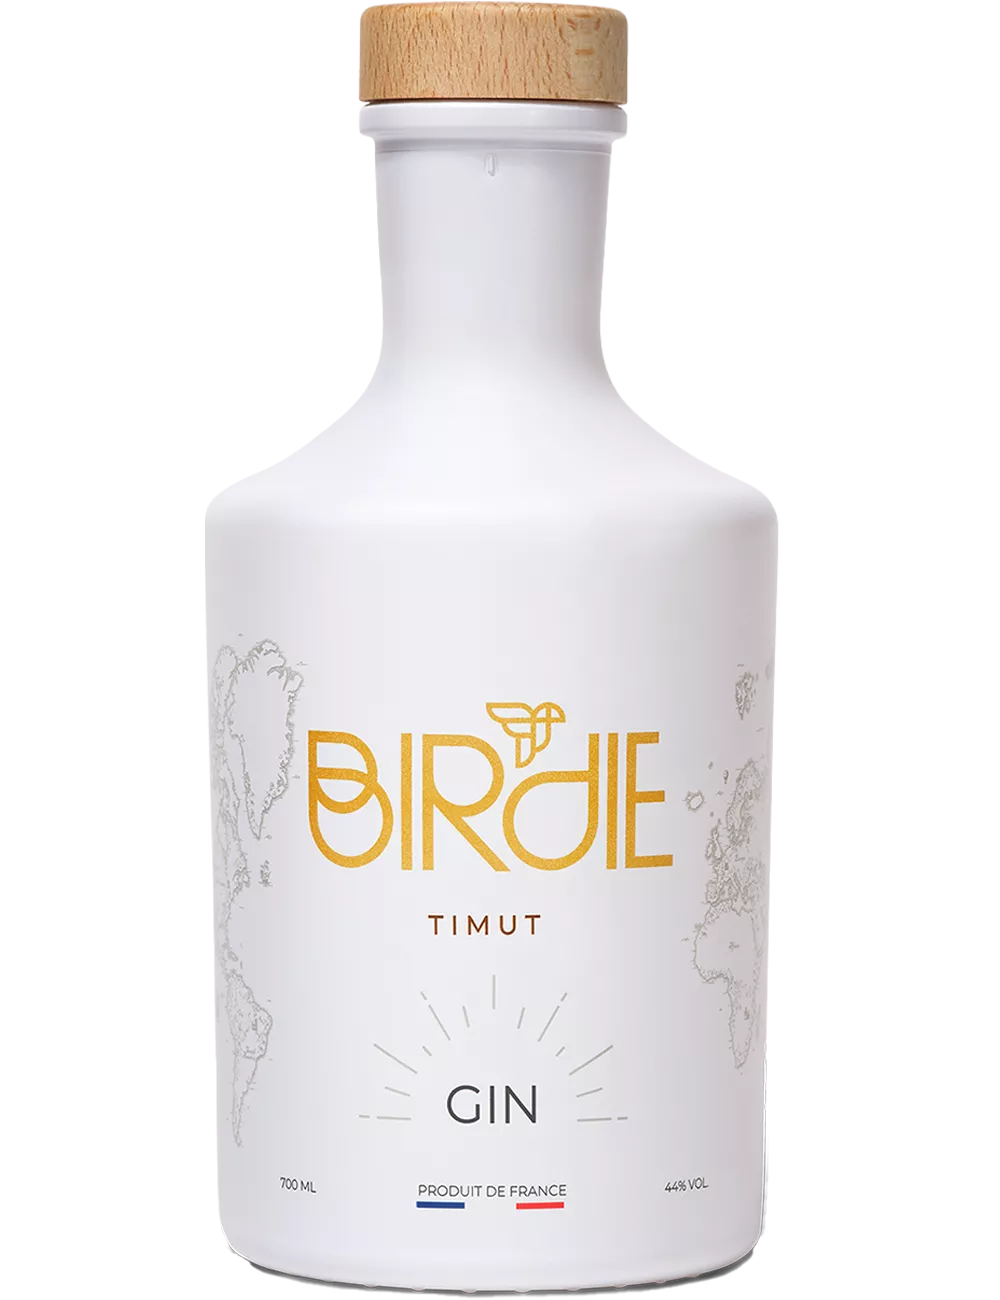 Birdie - Timut - Gin